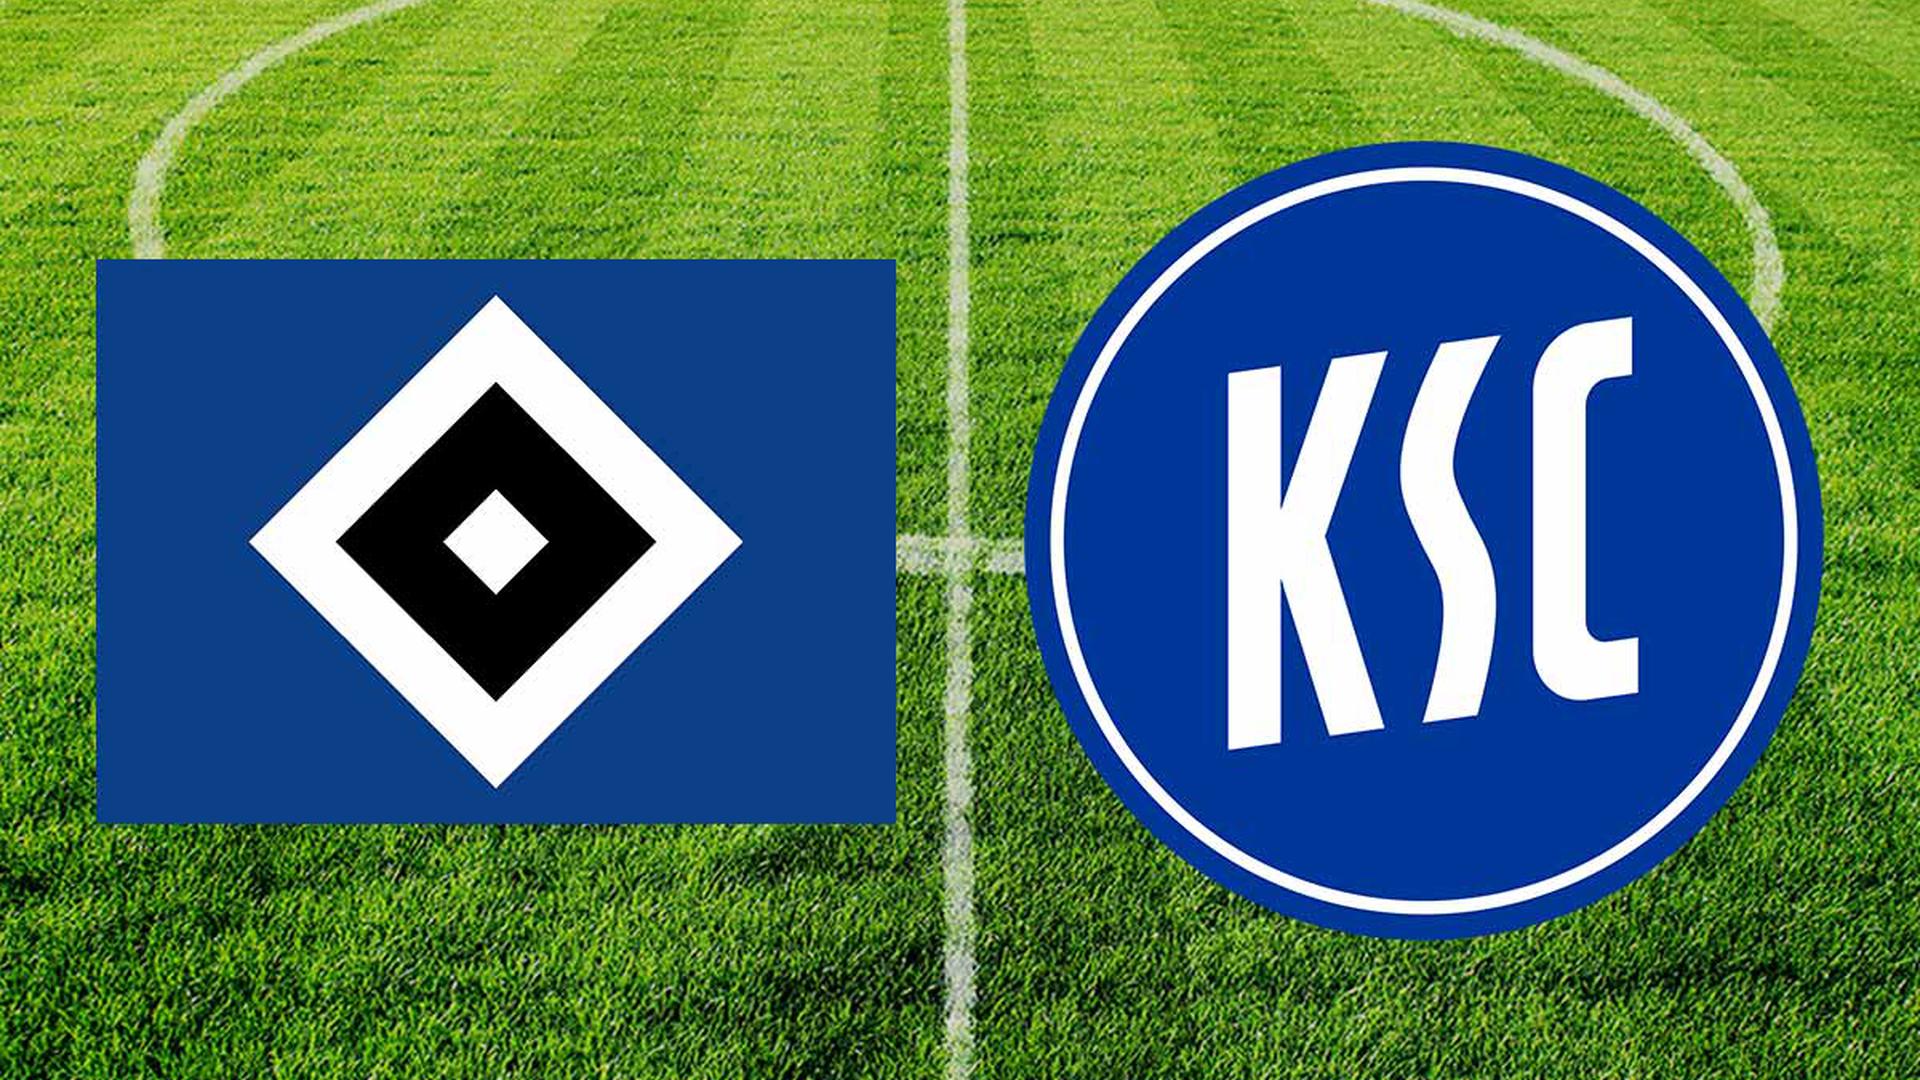 HSV Logo und KSC Logo vor einem Fußballplatz